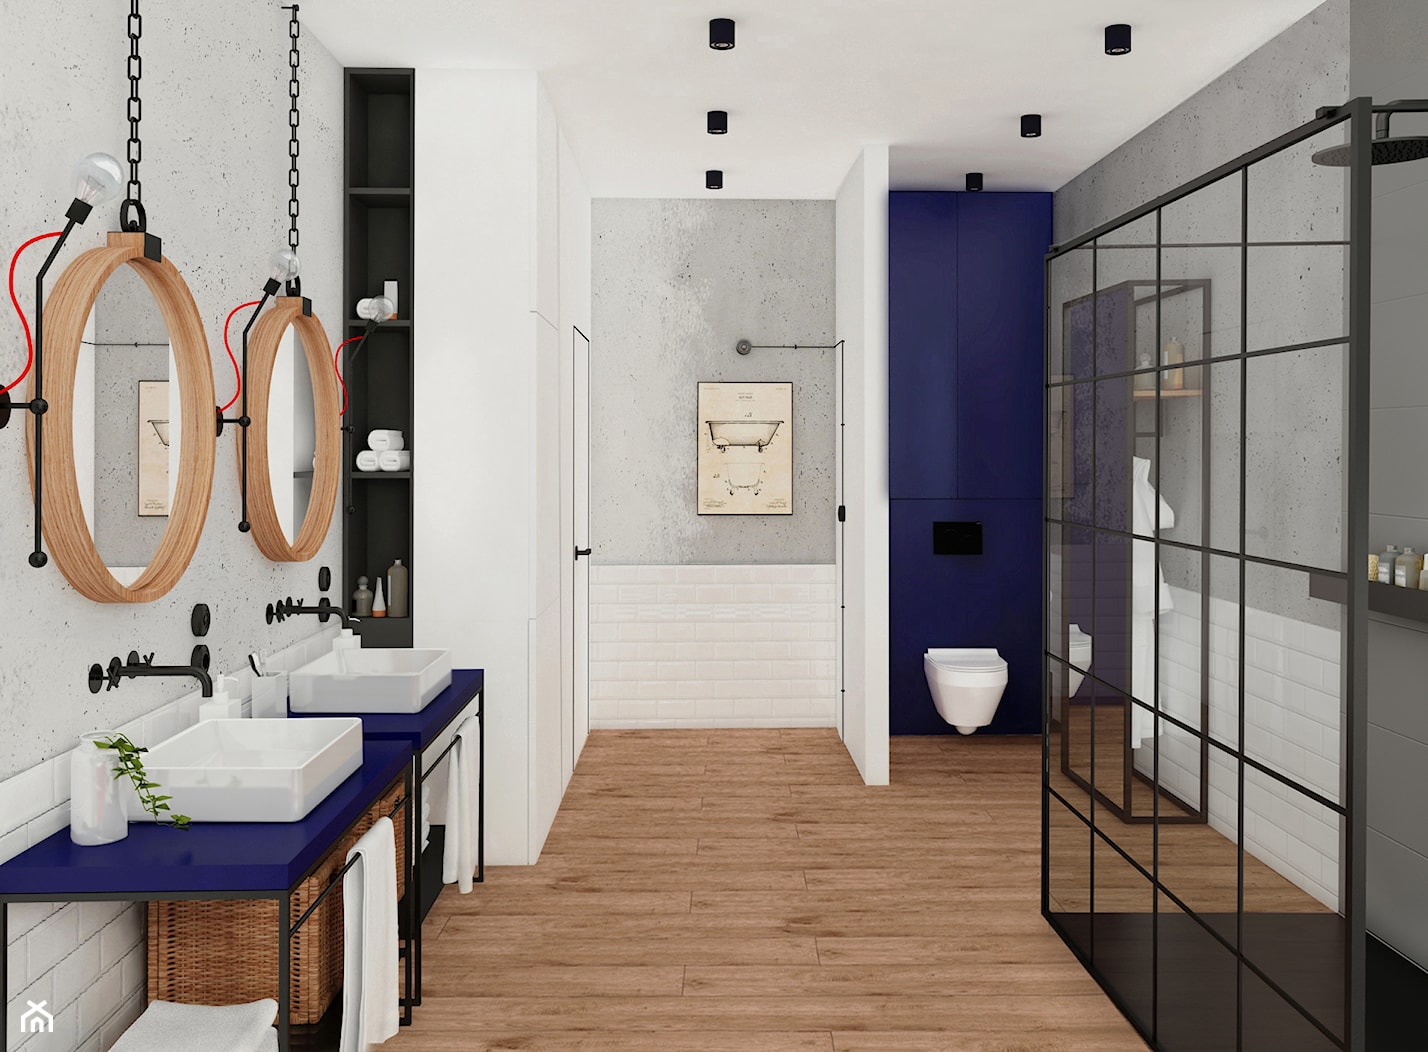 Łazienka w stylu loft - Łazienka, styl industrialny - zdjęcie od meinDESIGN - Homebook